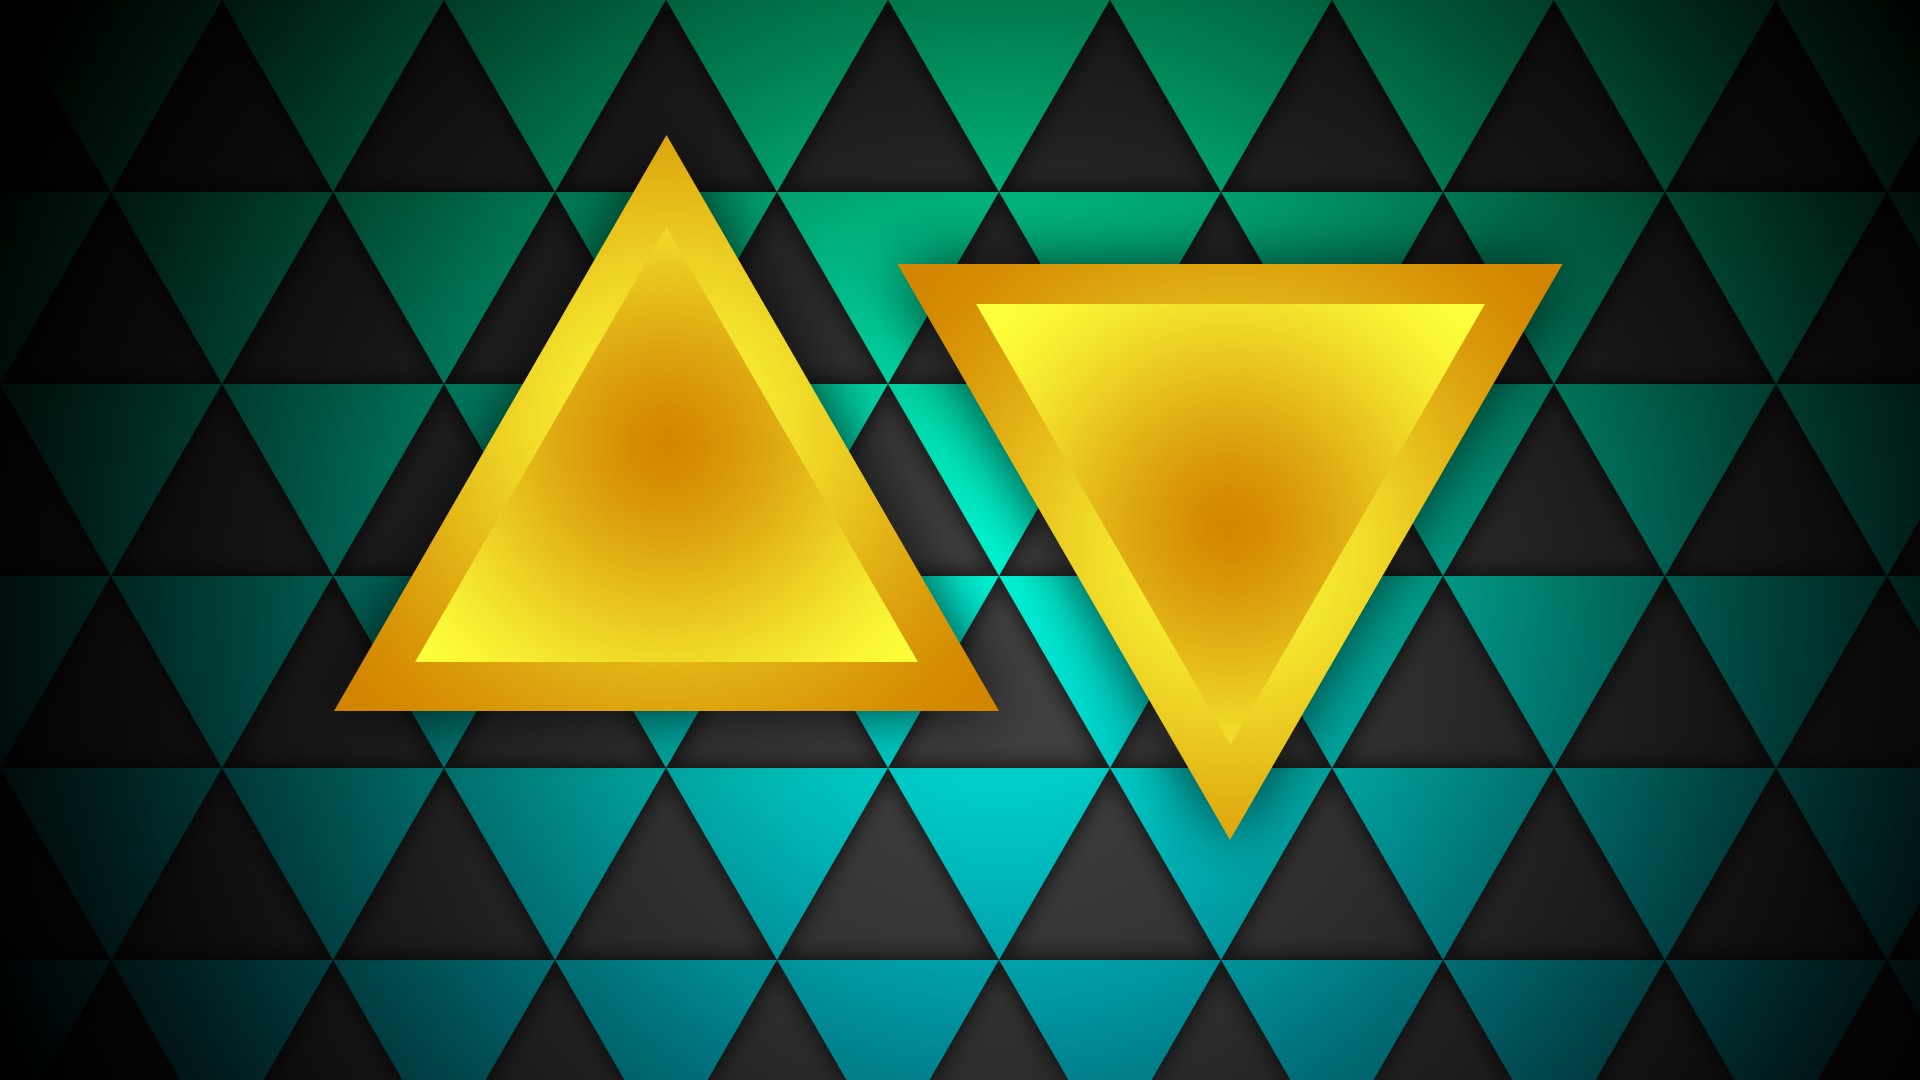 Желтые треугольники фон